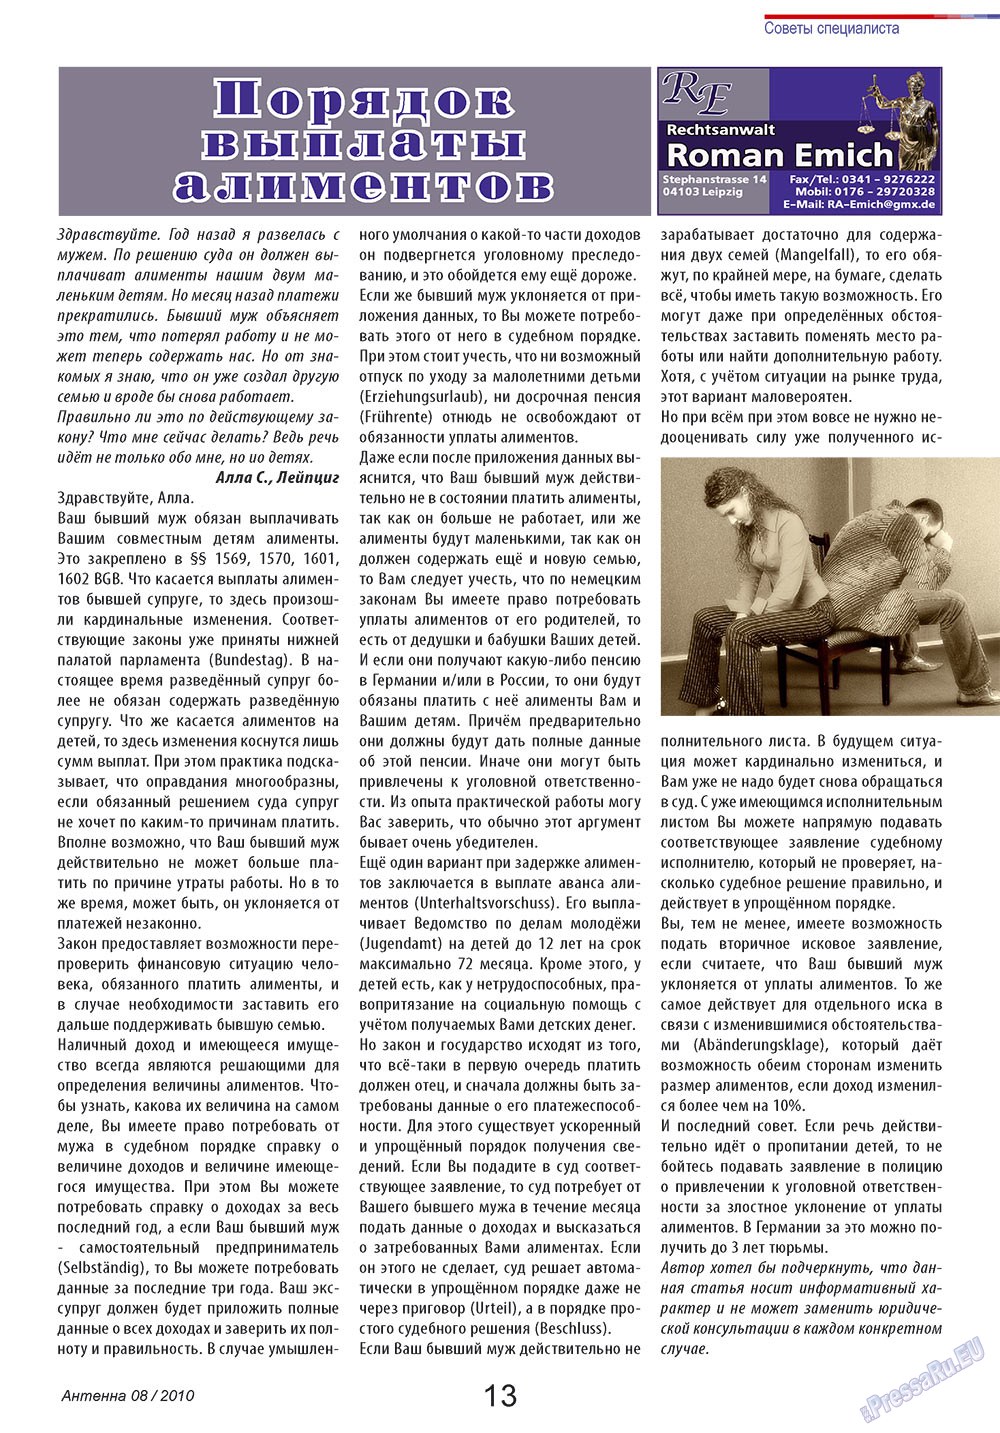 Антенна, журнал. 2010 №8 стр.13